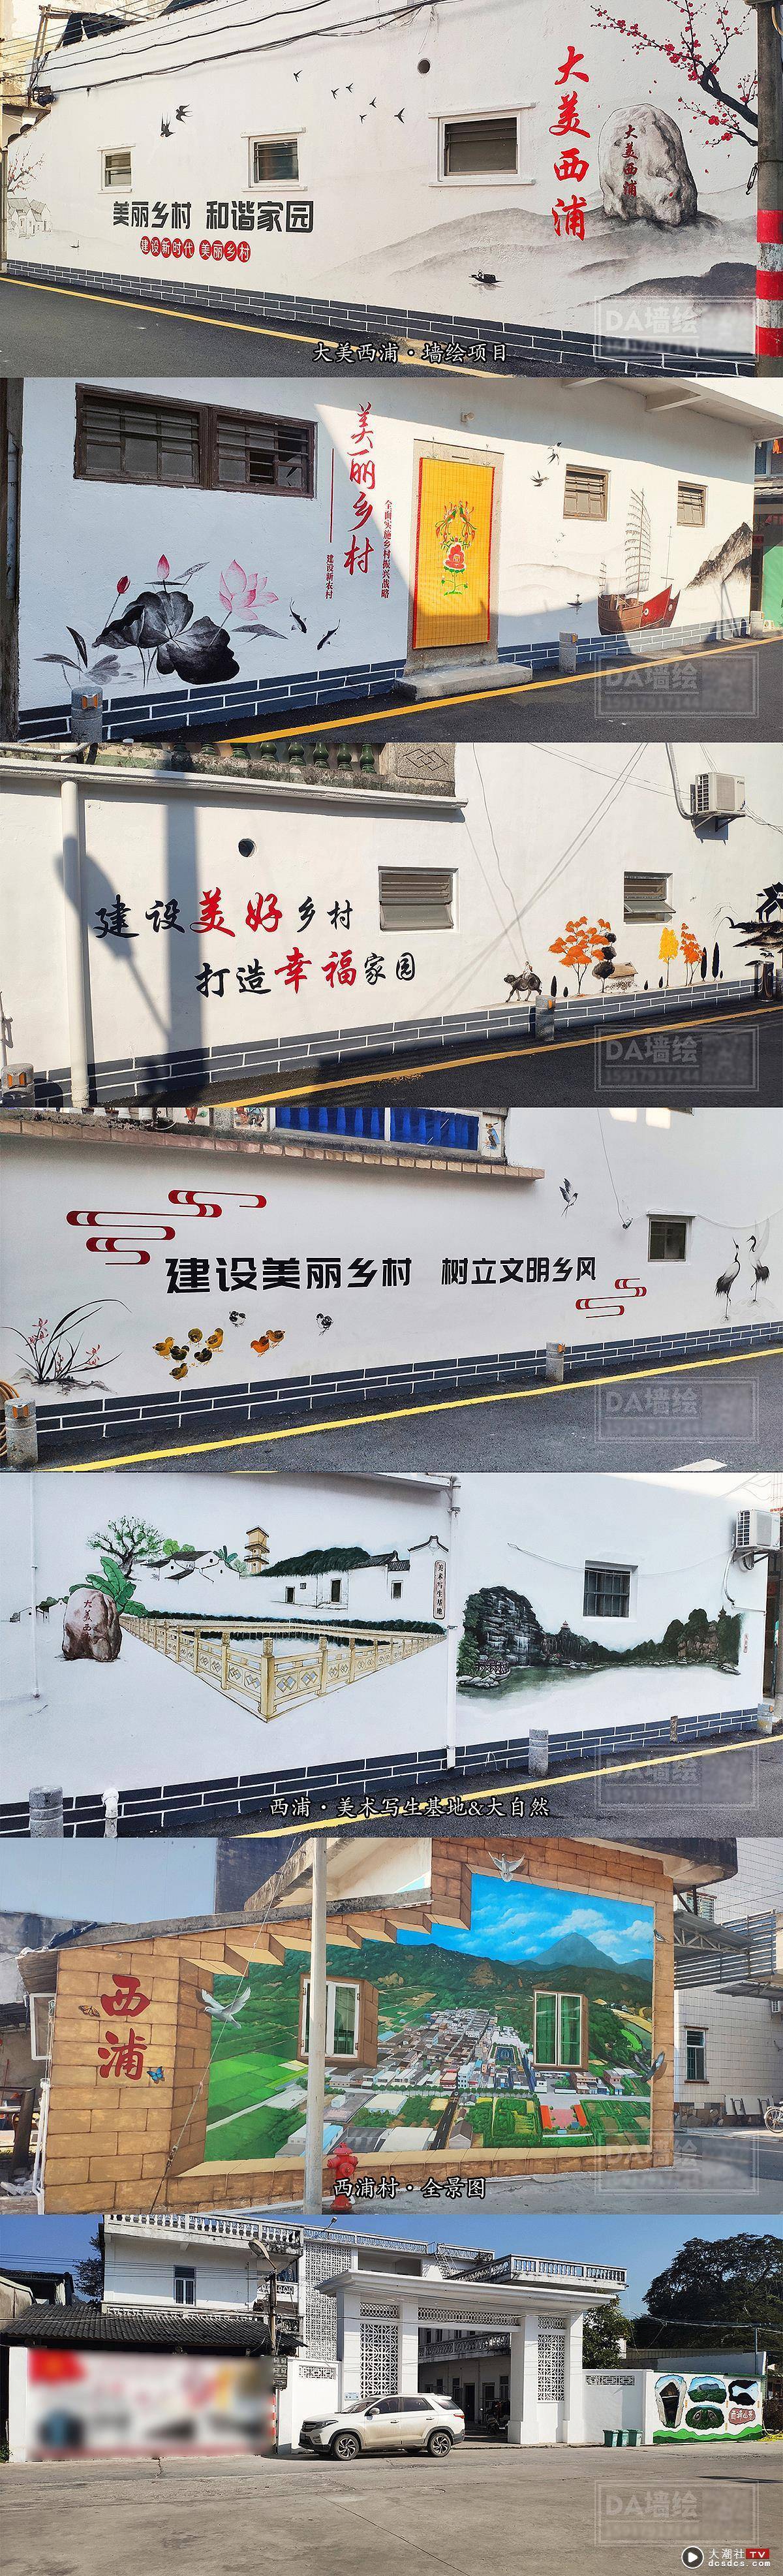 美丽乡村墙绘项目——汕头市澄海区西浦村美丽乡村项目